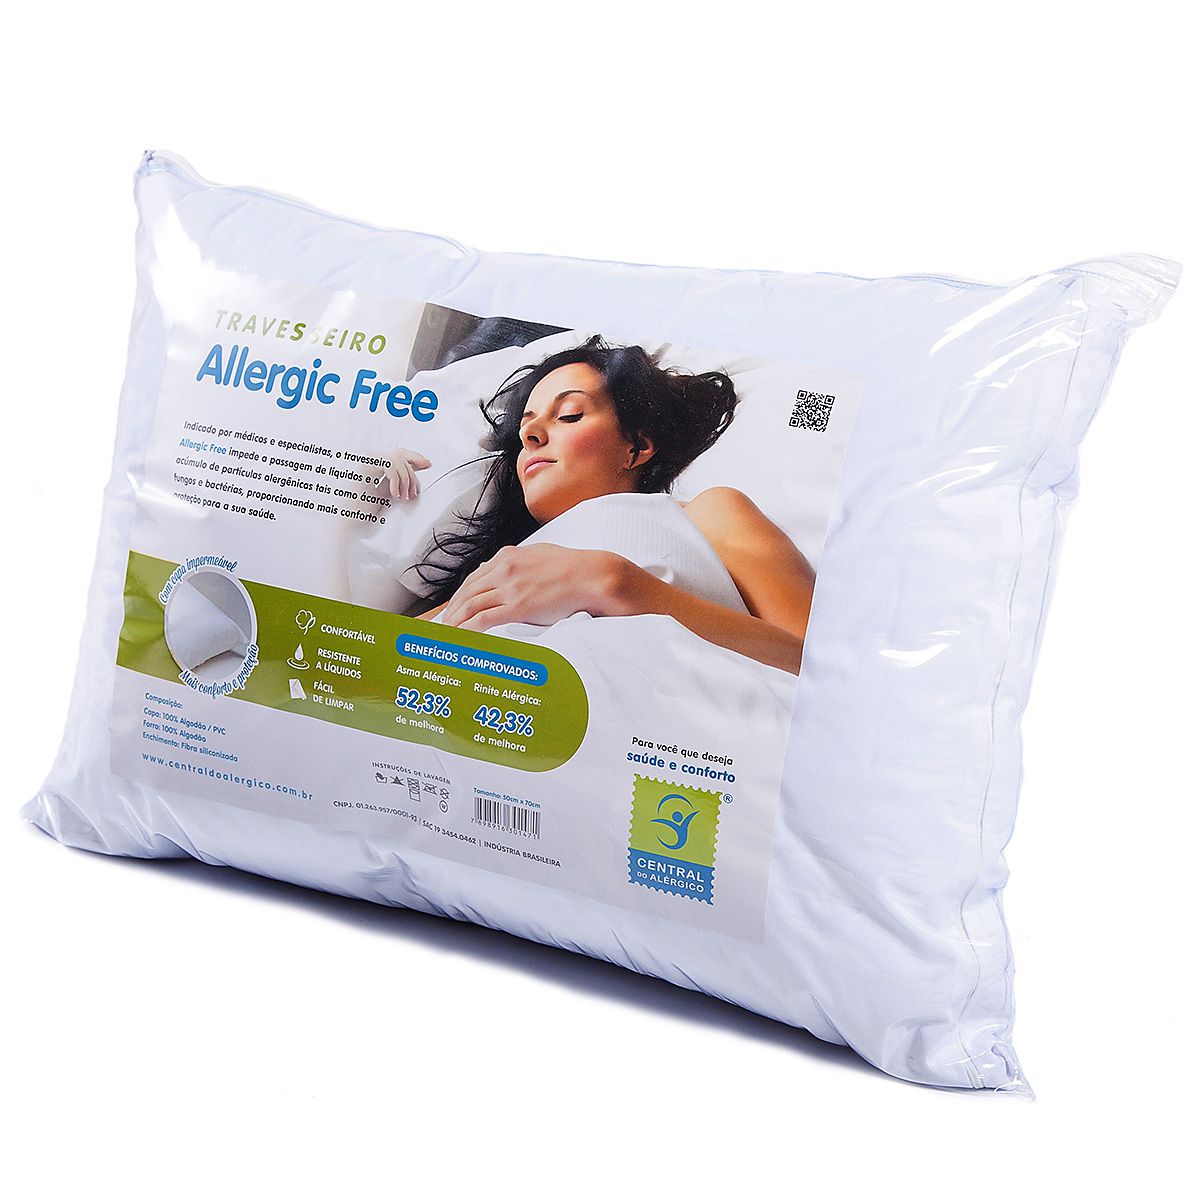 Travesseiro 50cm x 70cm Antialérgico ALLERGIC FREE - Acompanha Capa 100% Algodão/ PVC